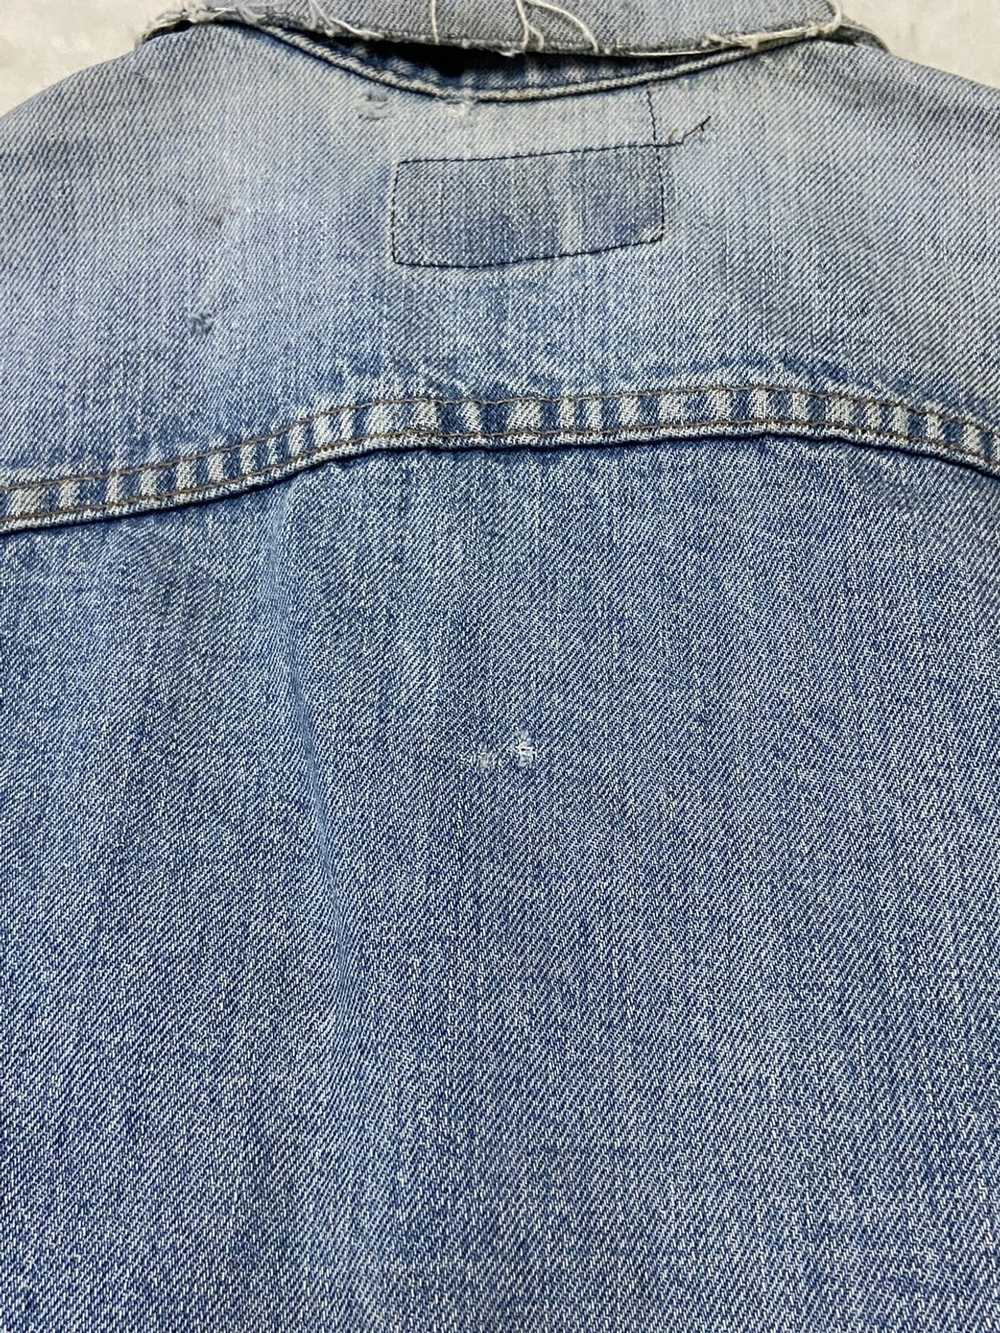 Levi's Vintage Clothing Type III Denim Jacket 705… - image 6